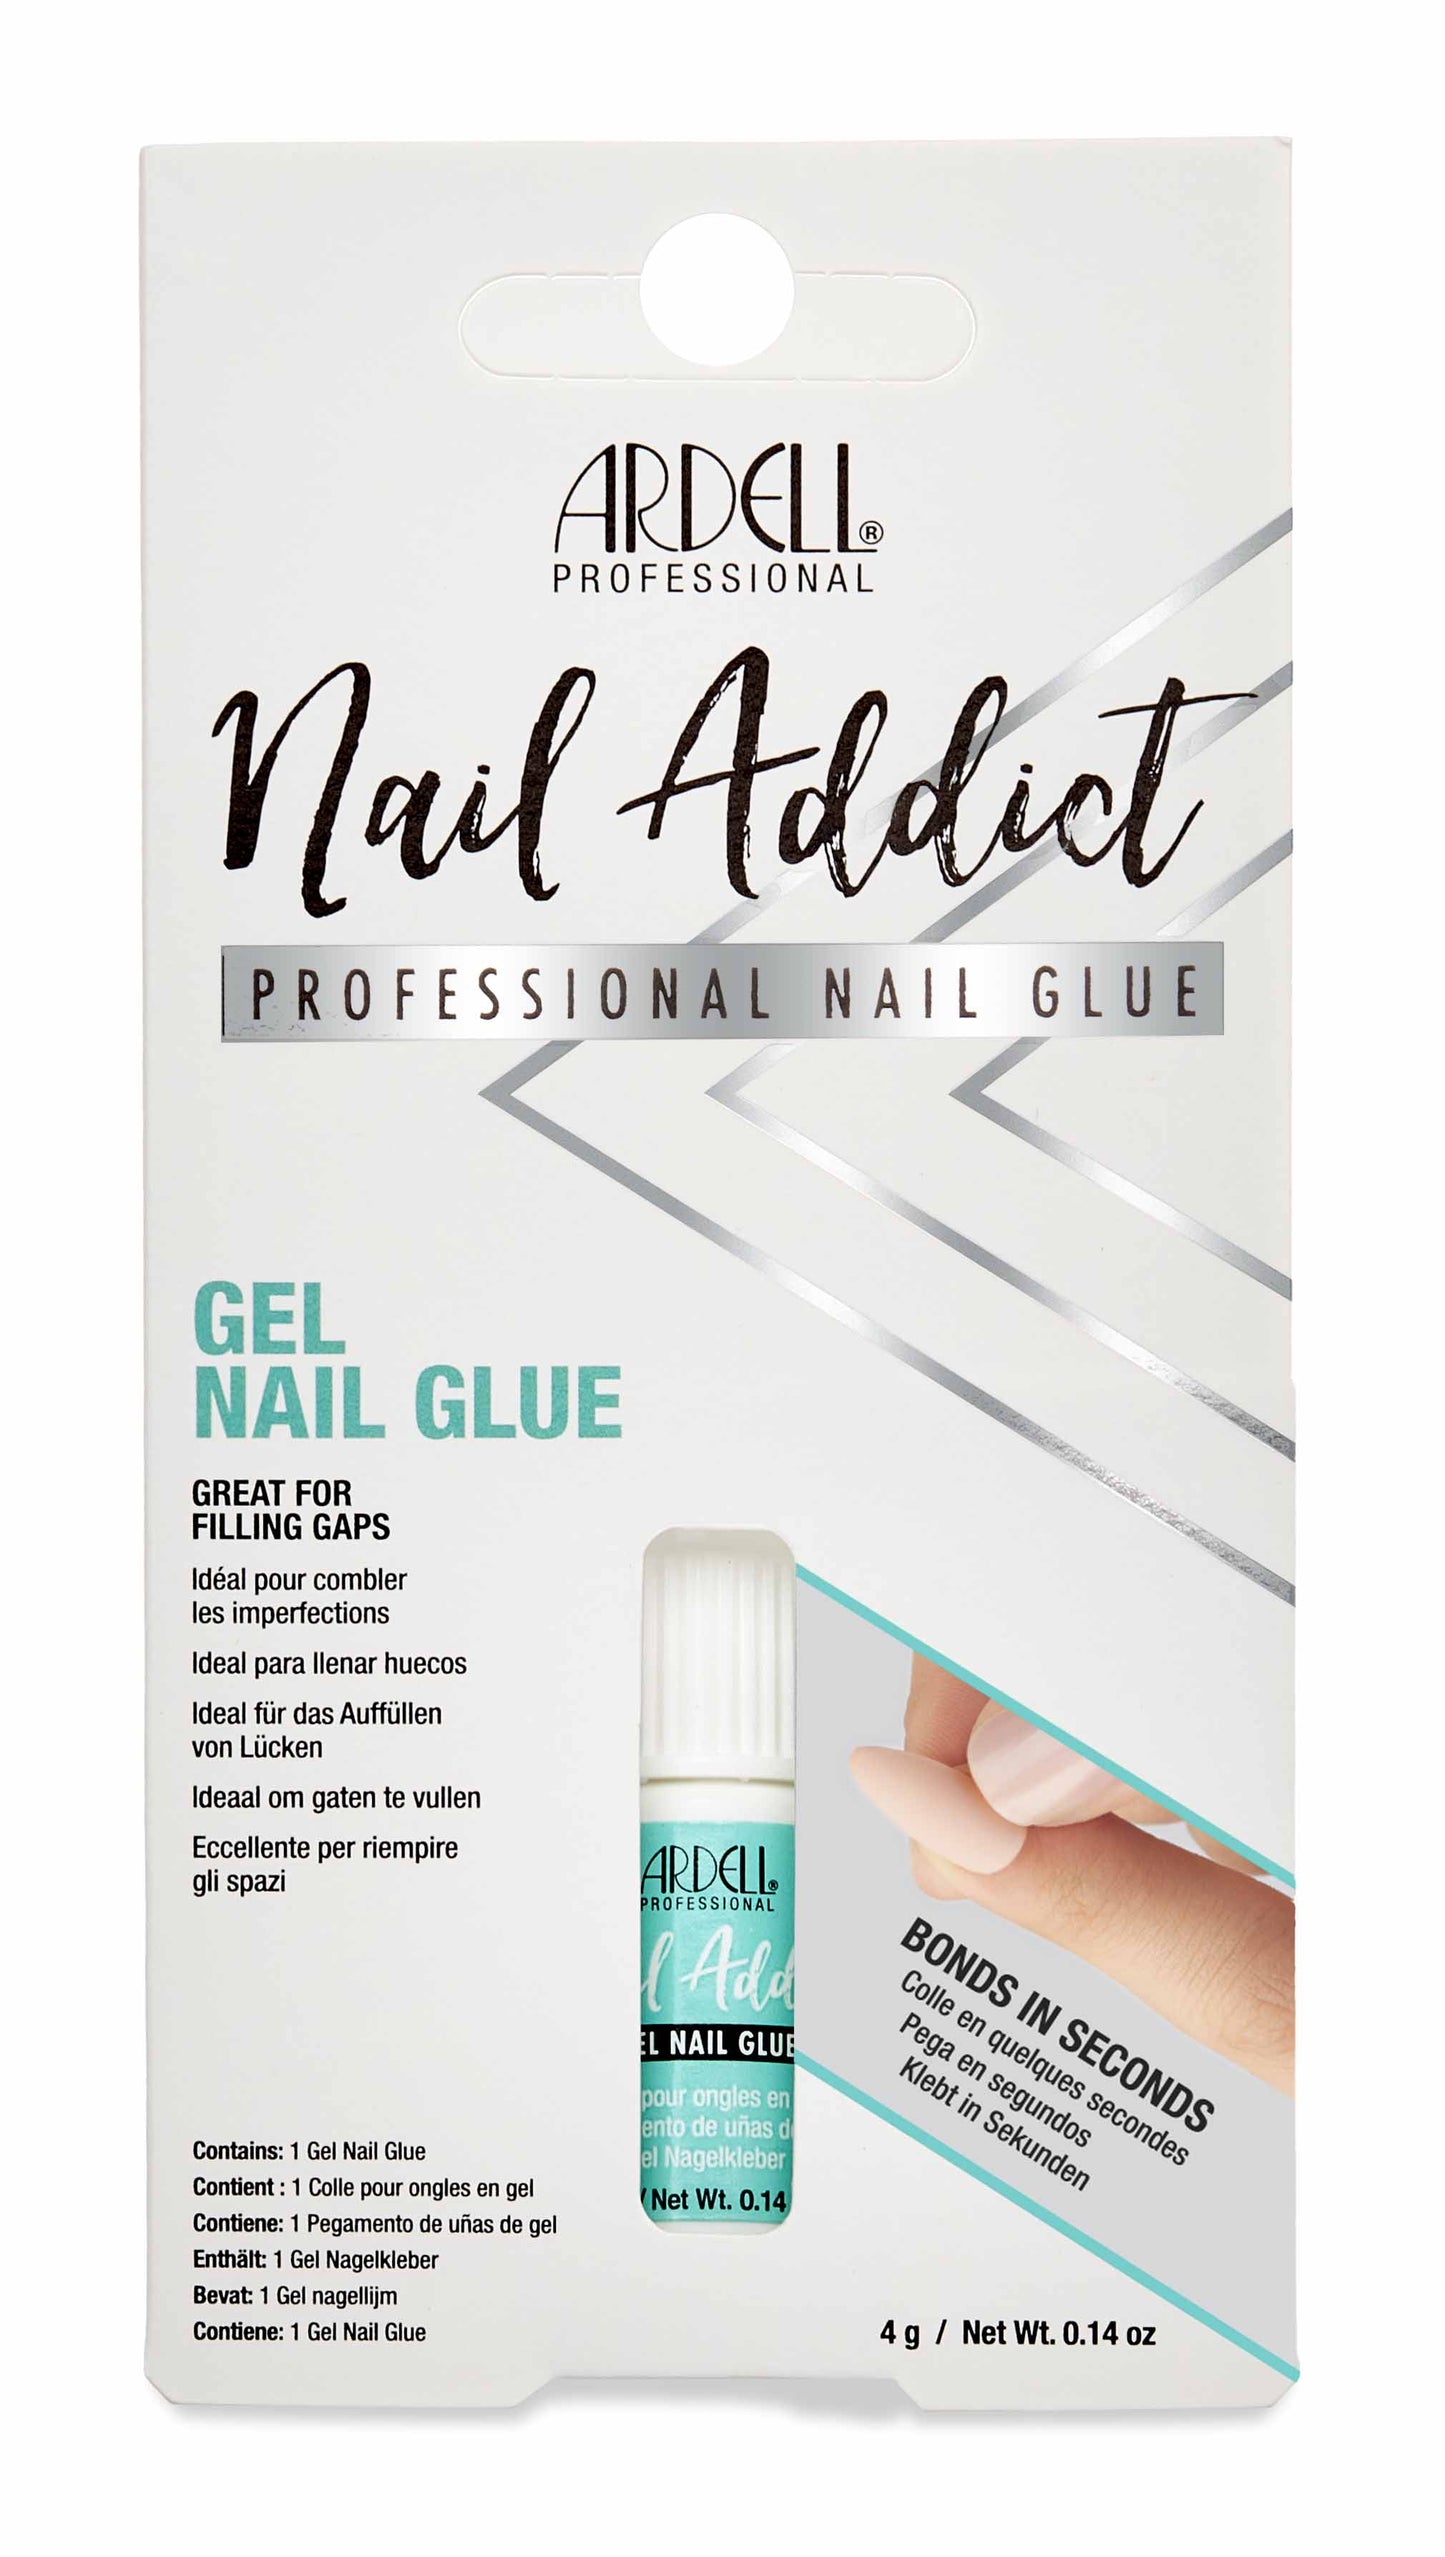 Ardell Nails Nail Addict False Nails Adhesive - Gel Glue 4g